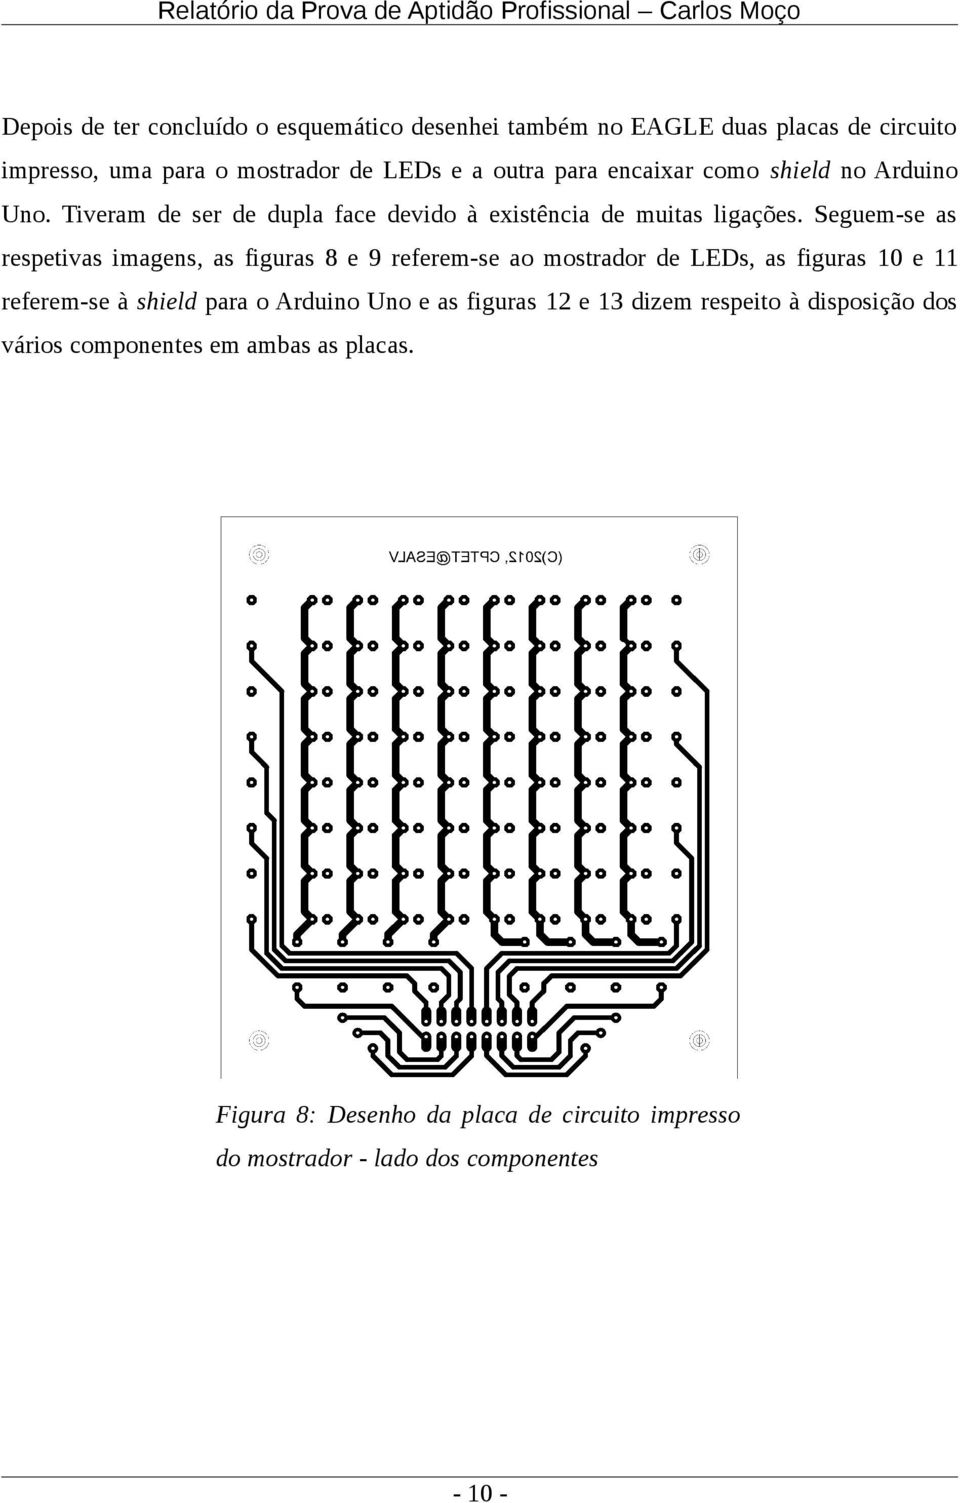 Seguem-se as respetivas imagens, as figuras 8 e 9 referem-se ao mostrador de LEDs, as figuras 10 e 11 referem-se à shield para o Arduino Uno e